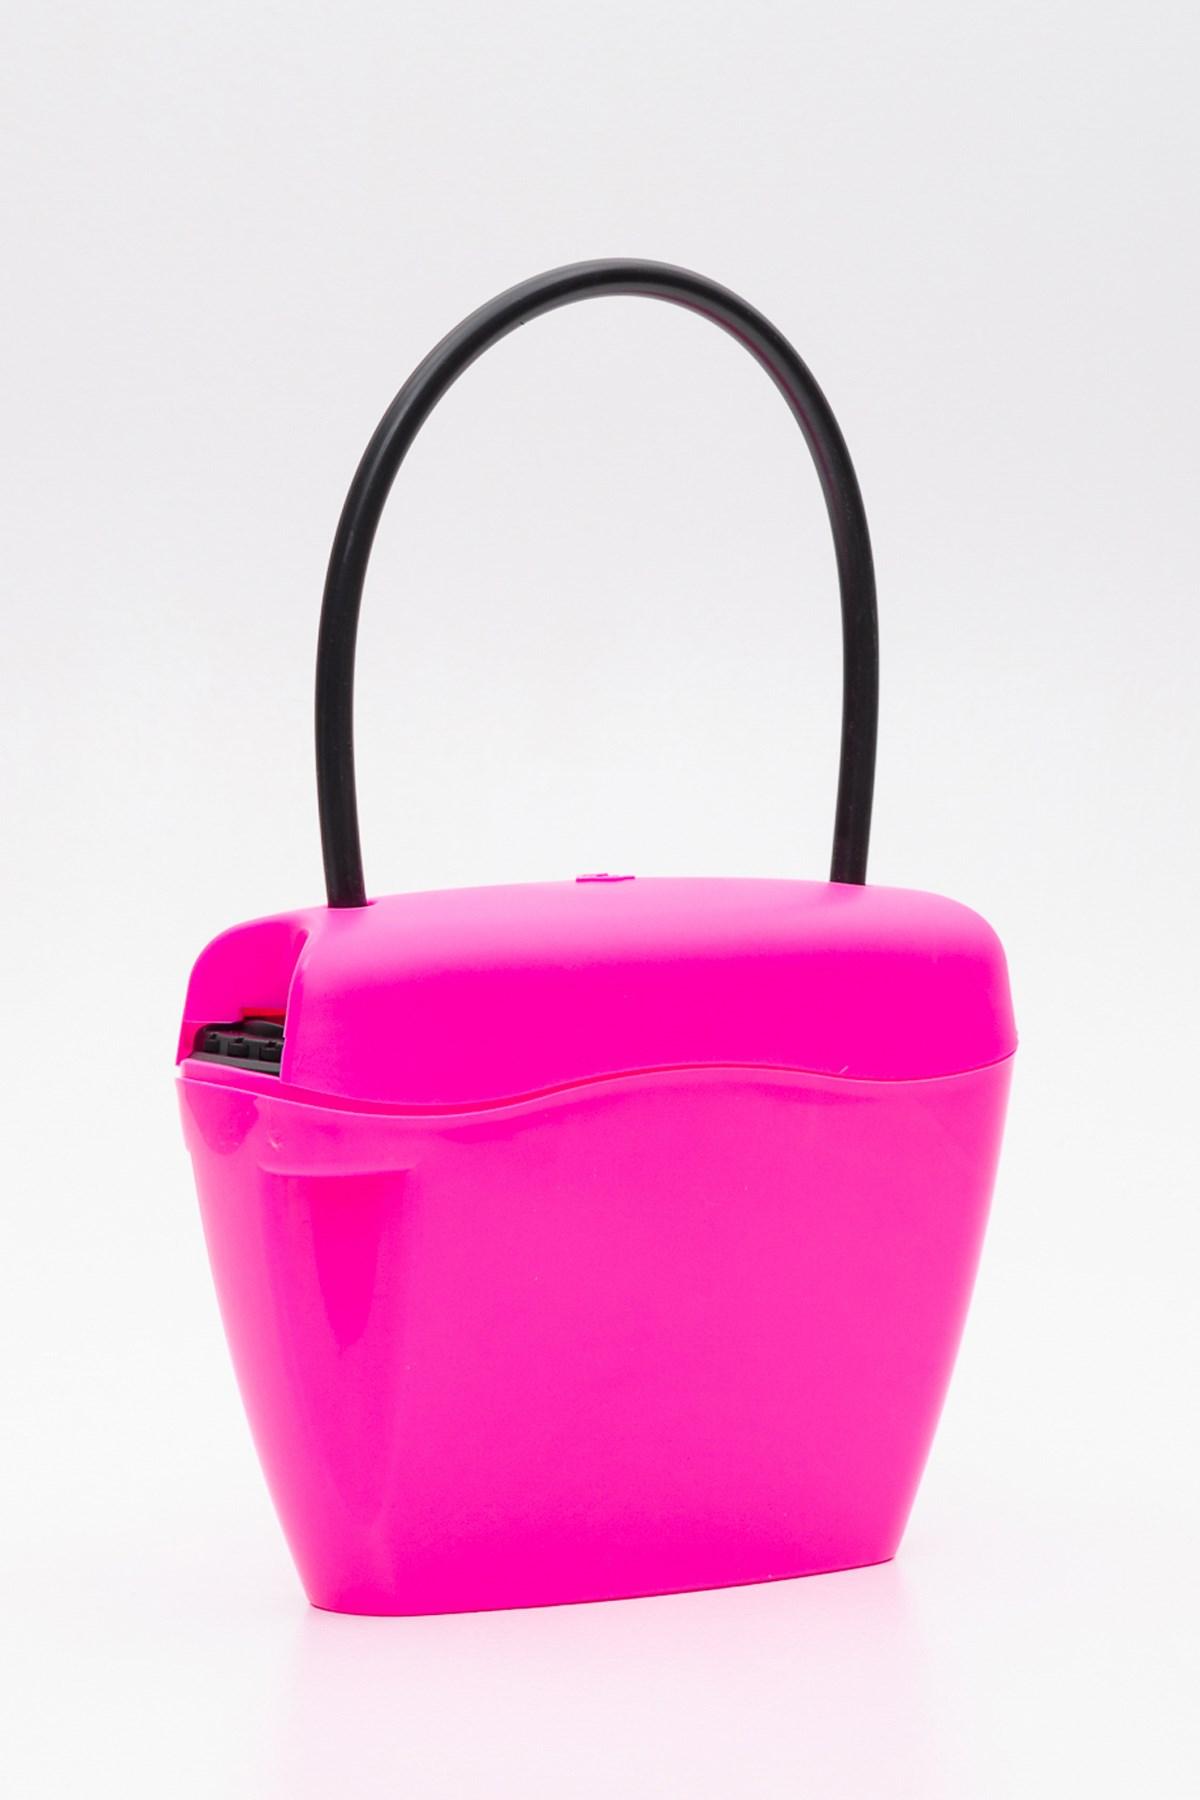 Damen Taschen Taschen-Accessoires Palm Angels Synthetik Polyester gehäuse in Pink 